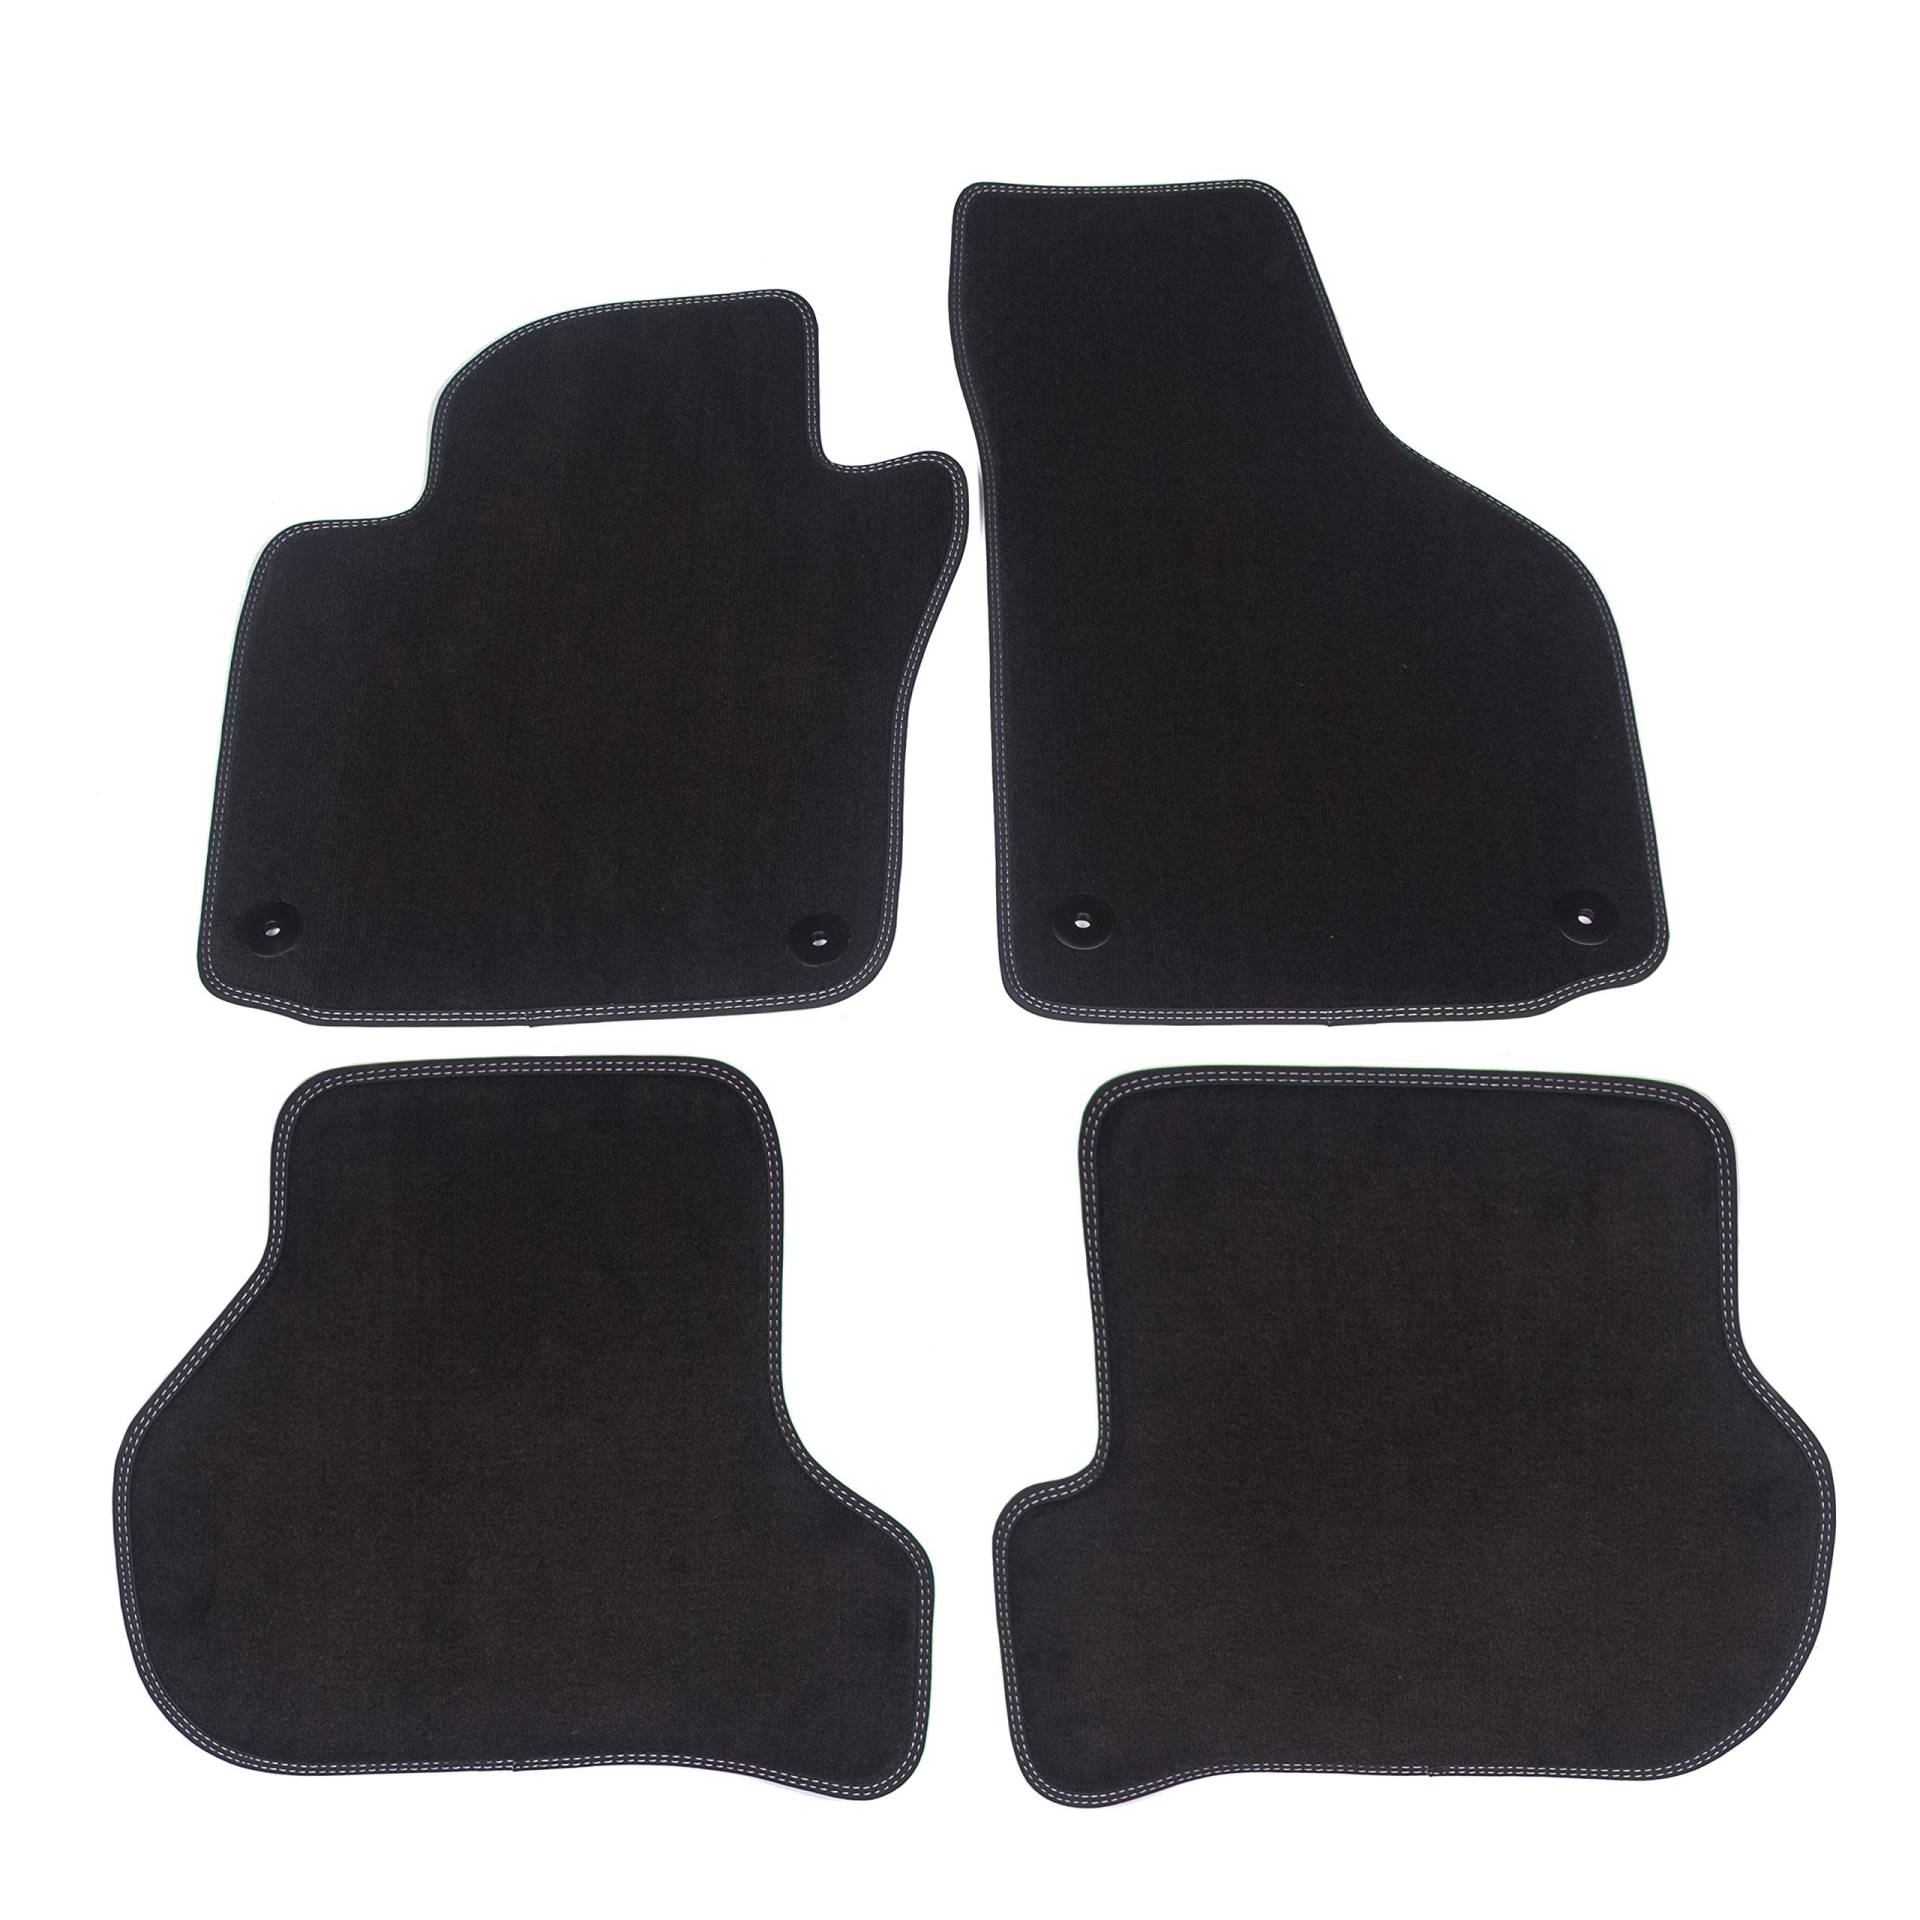 Pro Auto Fußmatten 2 BM22-3-2-1 Original Qualität Velours mit Festsetzung 100% Passgenau 4-Teilig, Schwarz, Set of 4 von Pro Auto Fußmatten